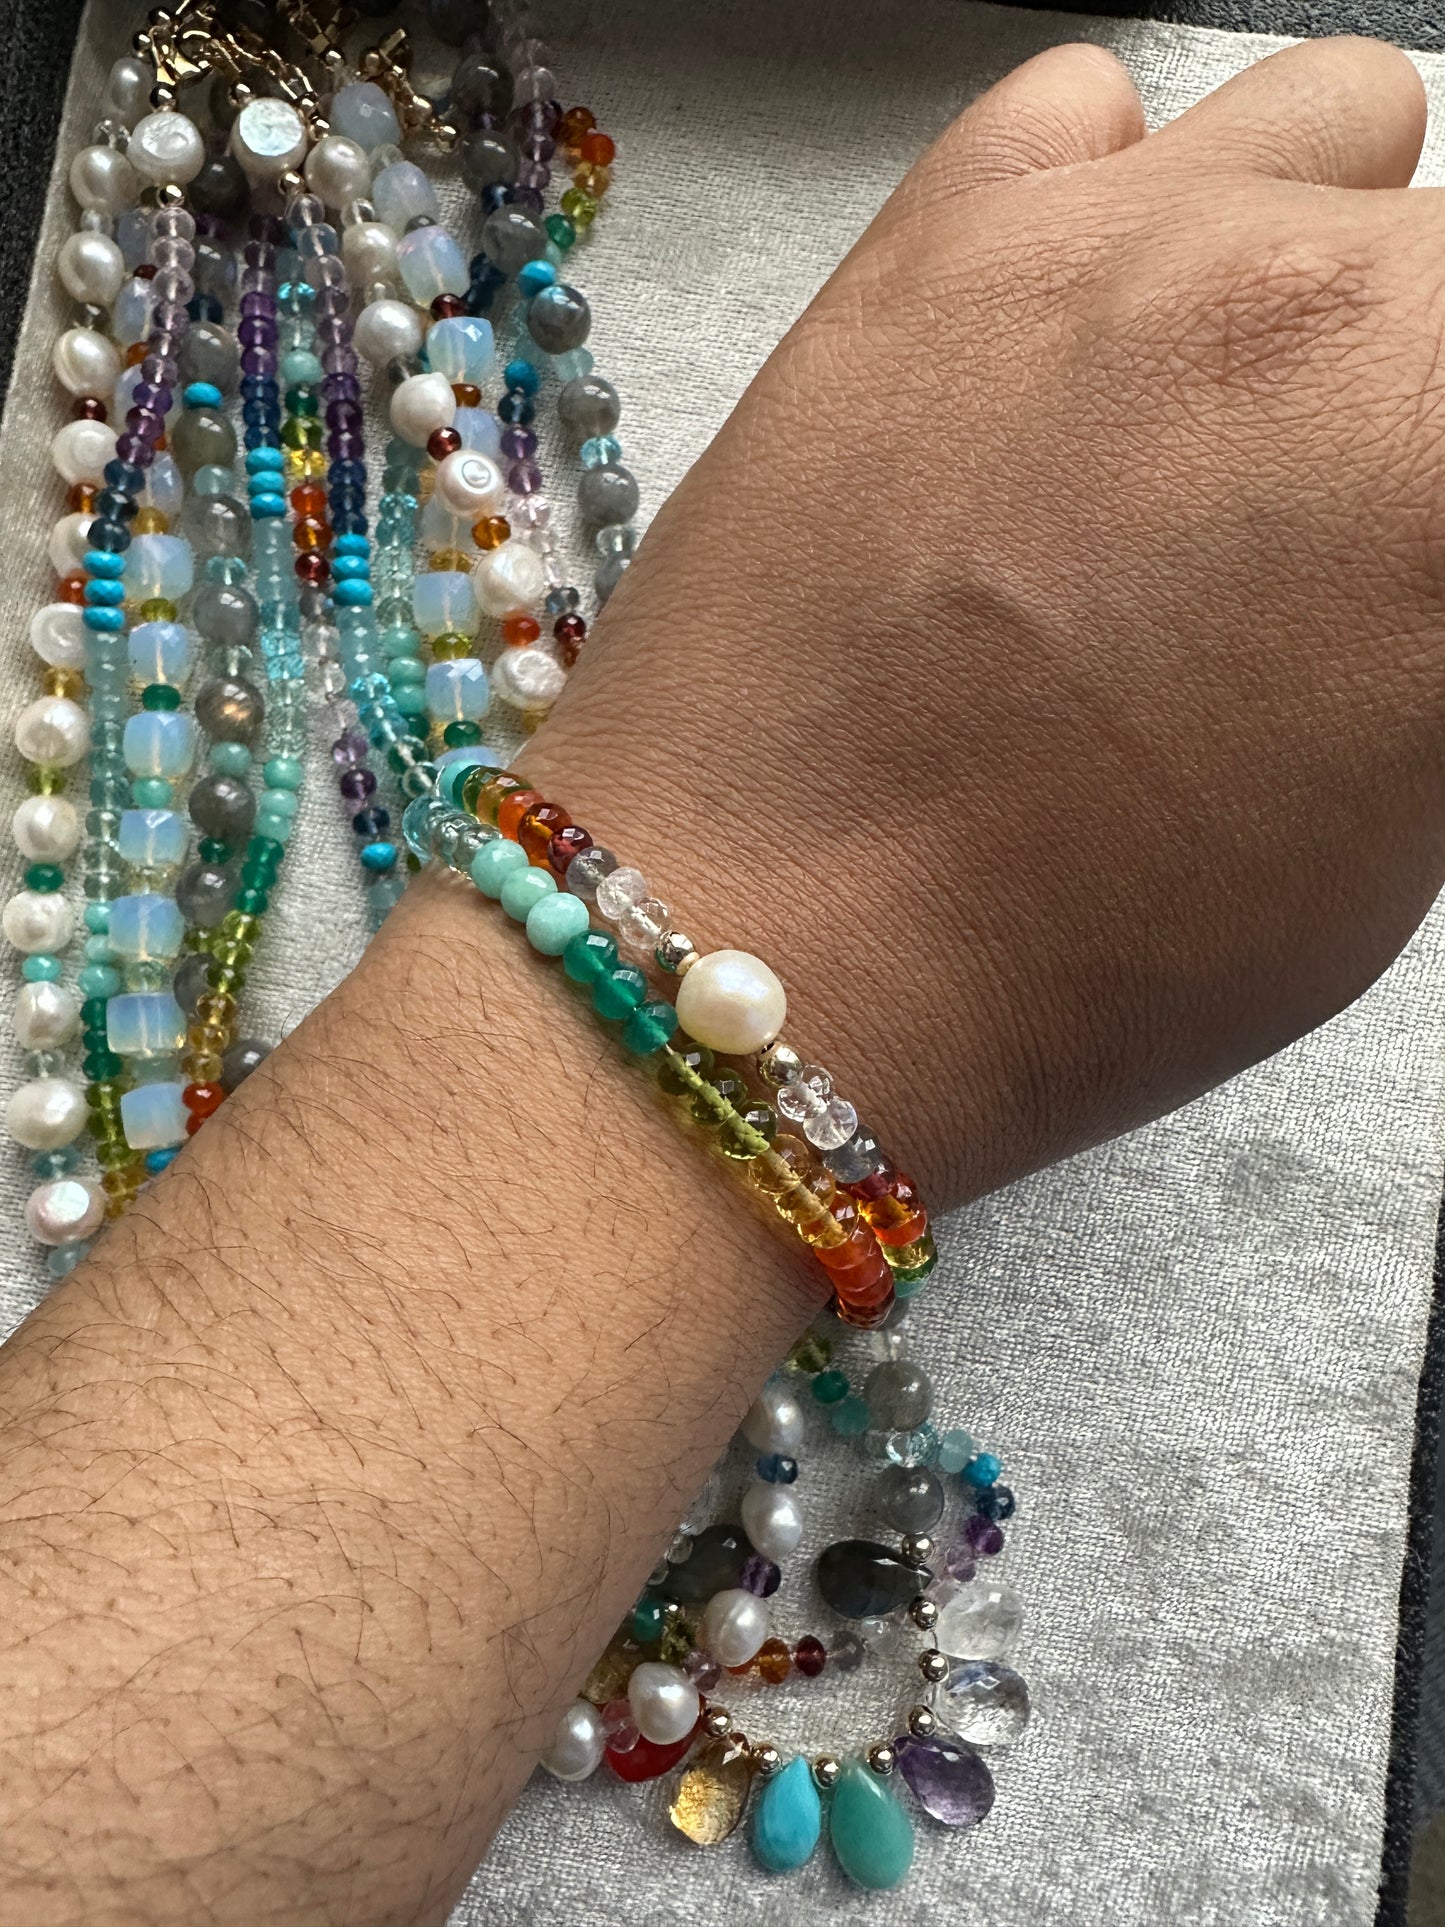 Rainbow Gemstone Necklace and Bracelet